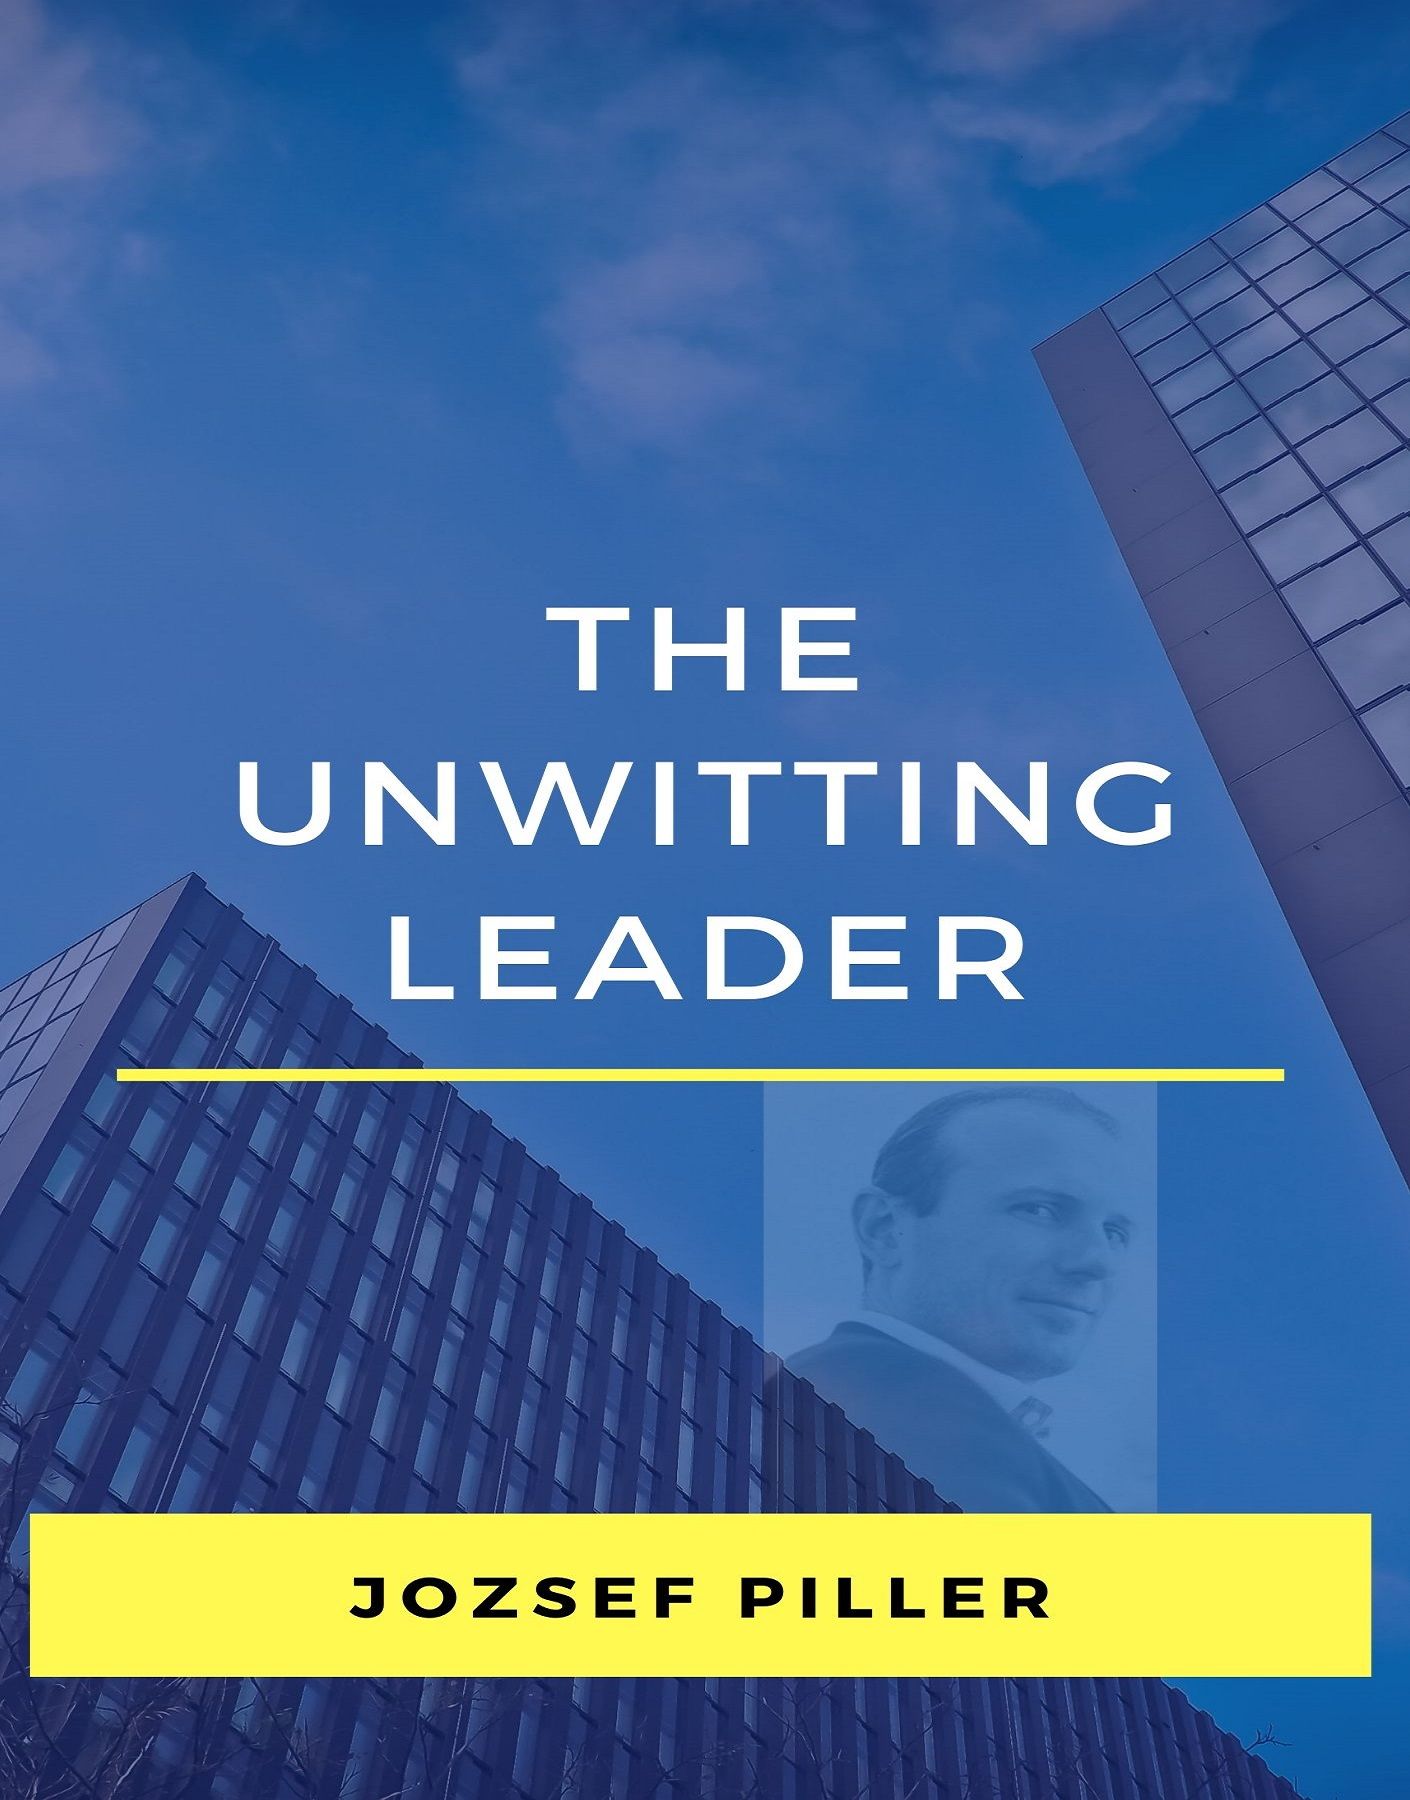 The unwitting leader, ljudbok av Jozsef Piller